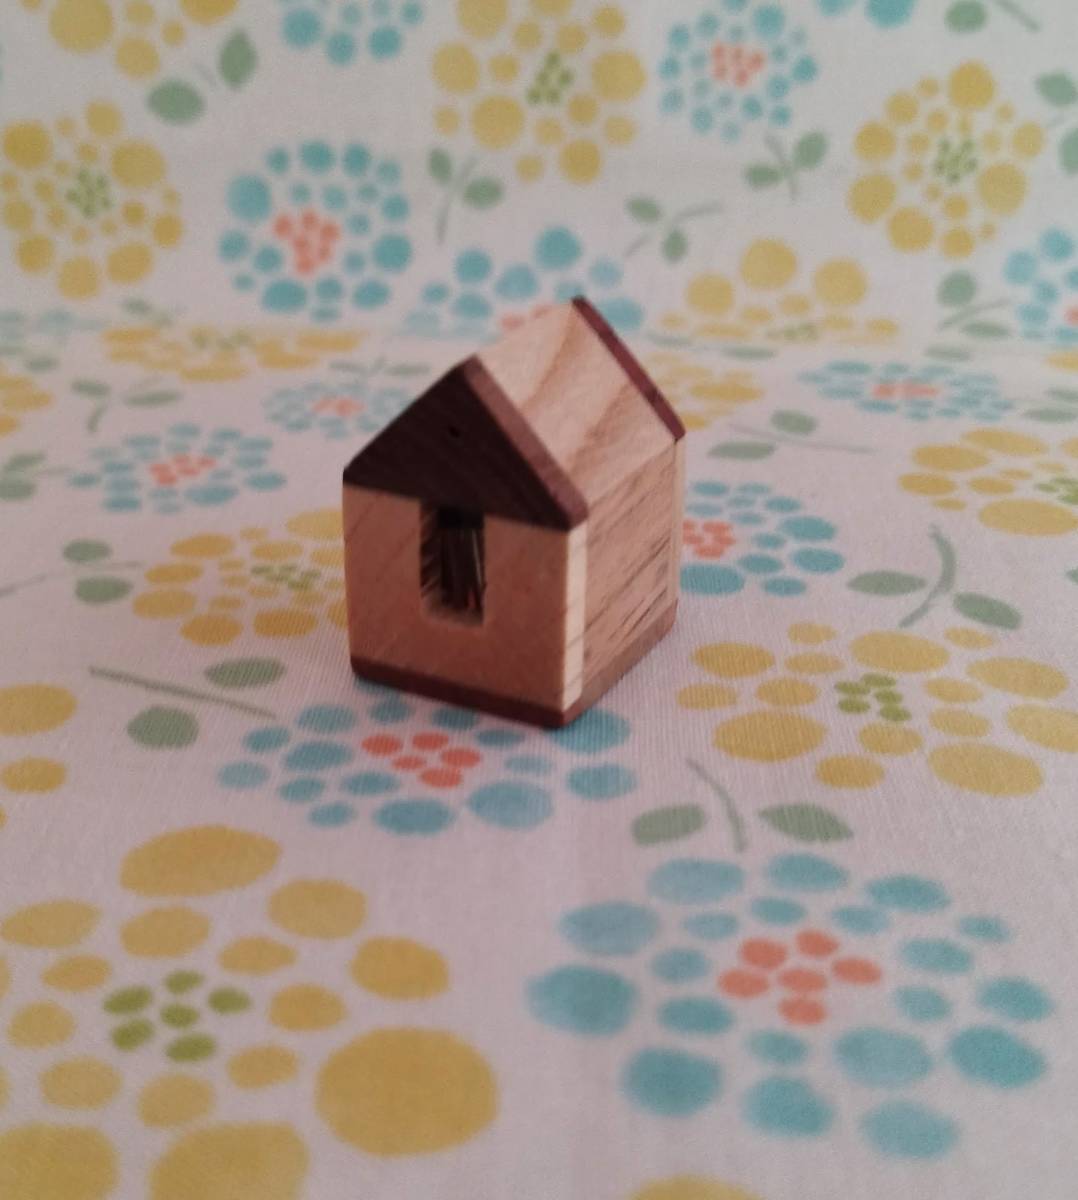 Dies ist ein hübsches Holzhaus. Es wurde von einem Schreiner handgefertigt., Handgefertigte Artikel, Innere, Verschiedene Waren, Ornament, Objekt